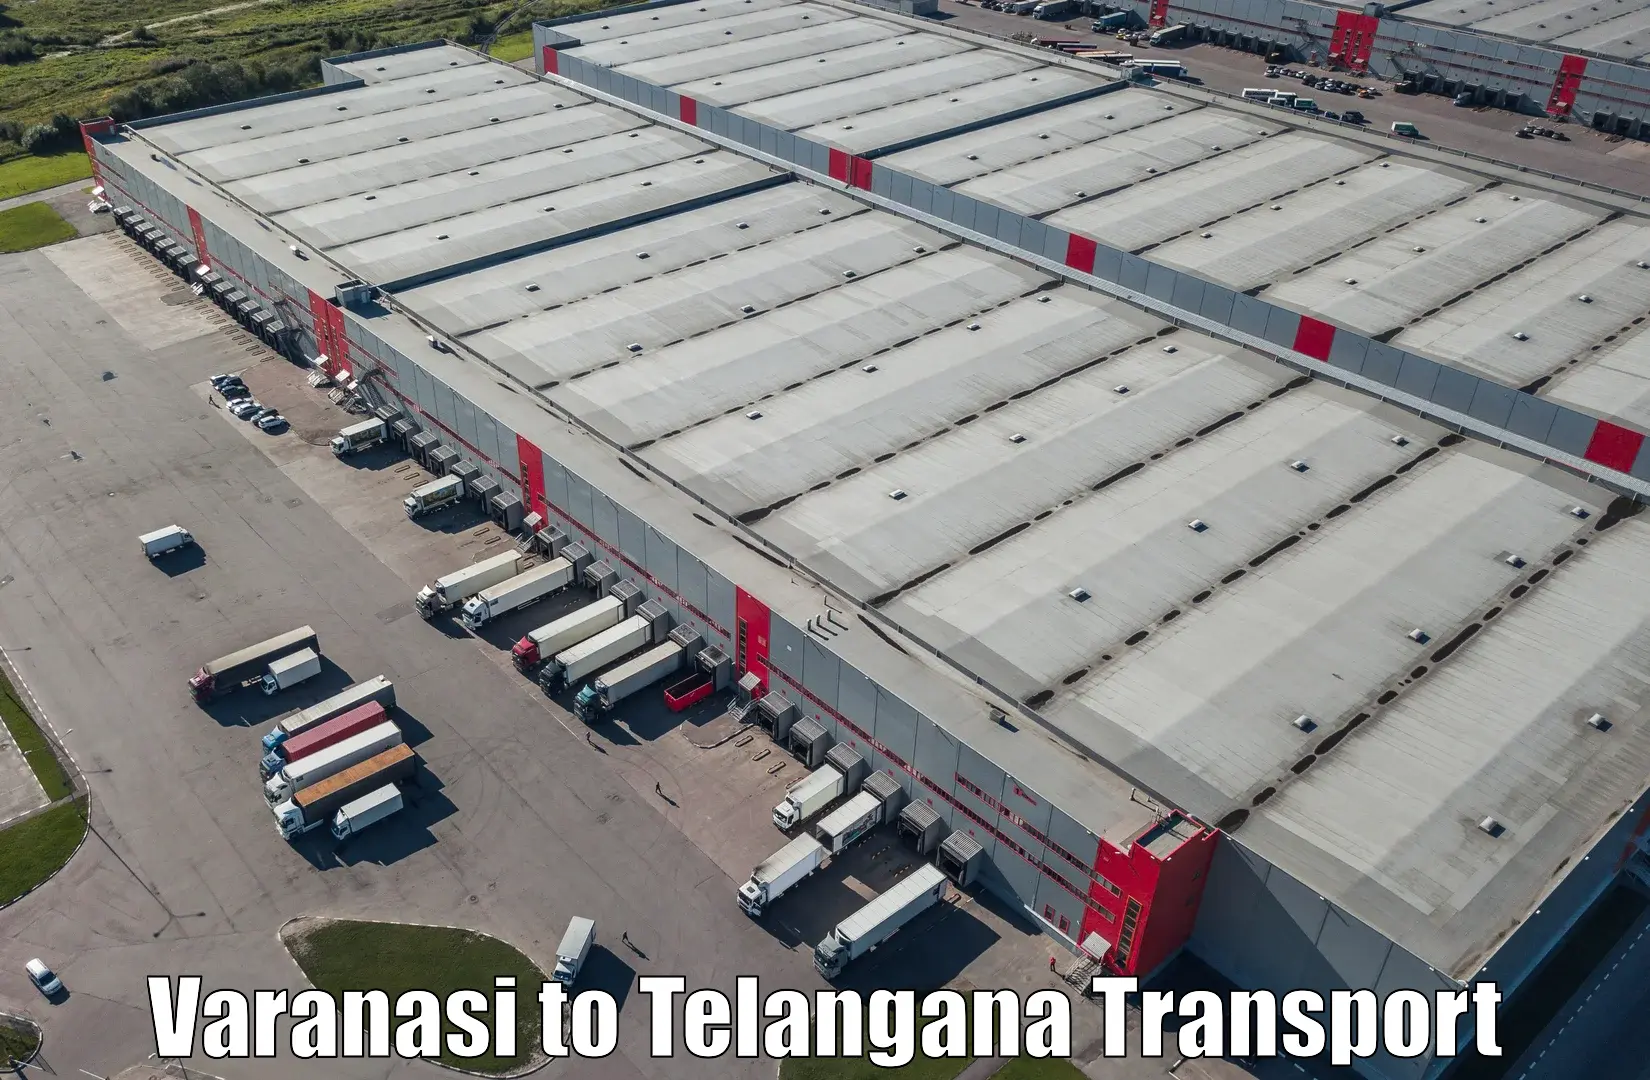 Truck transport companies in India Varanasi to Karimnagar